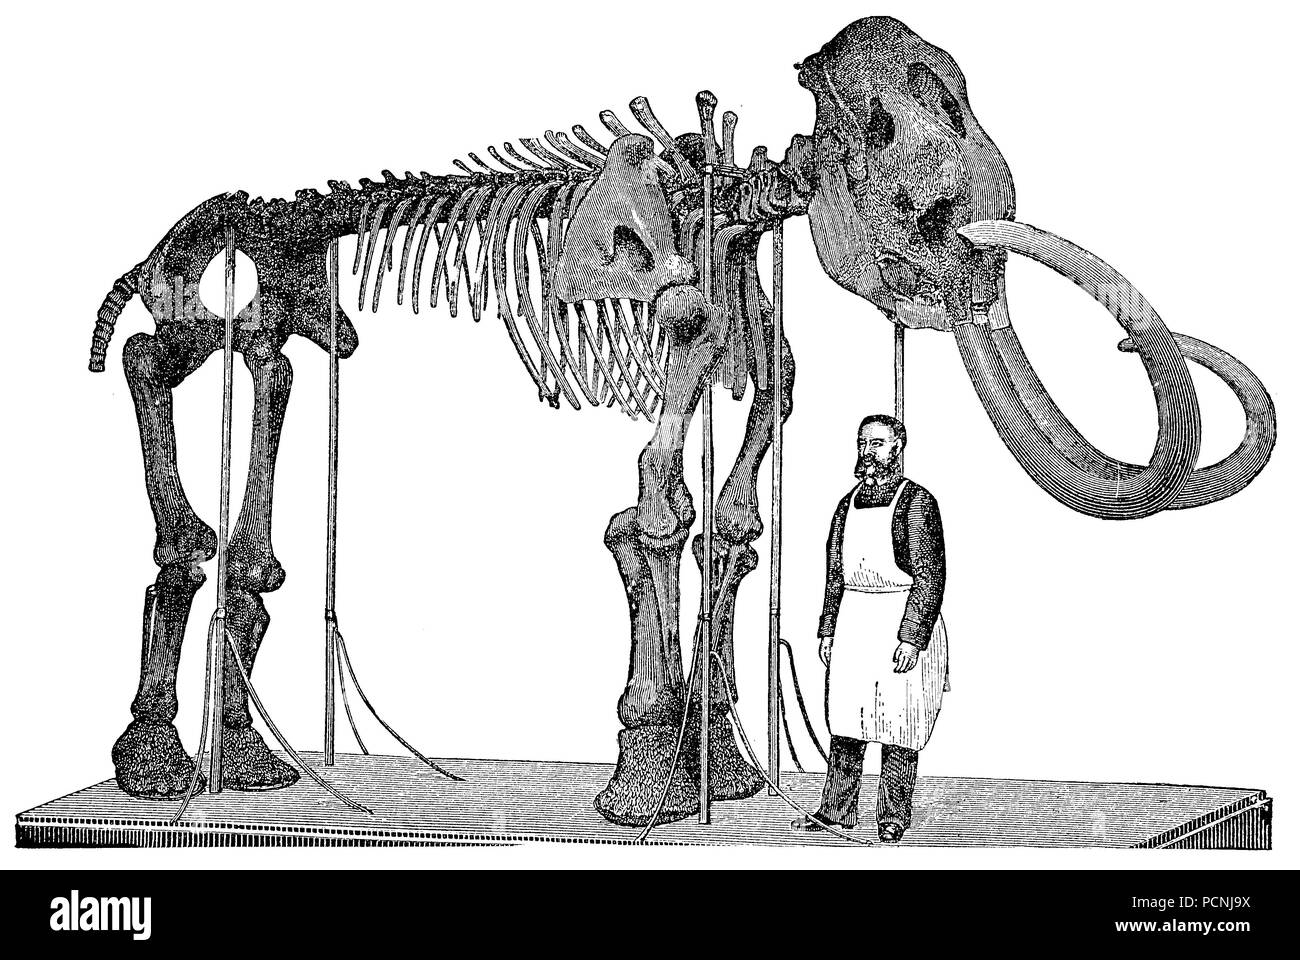 Squelette d'un mammouth, amélioration numérique reproduction d'une image historique de l'année 1885 Banque D'Images